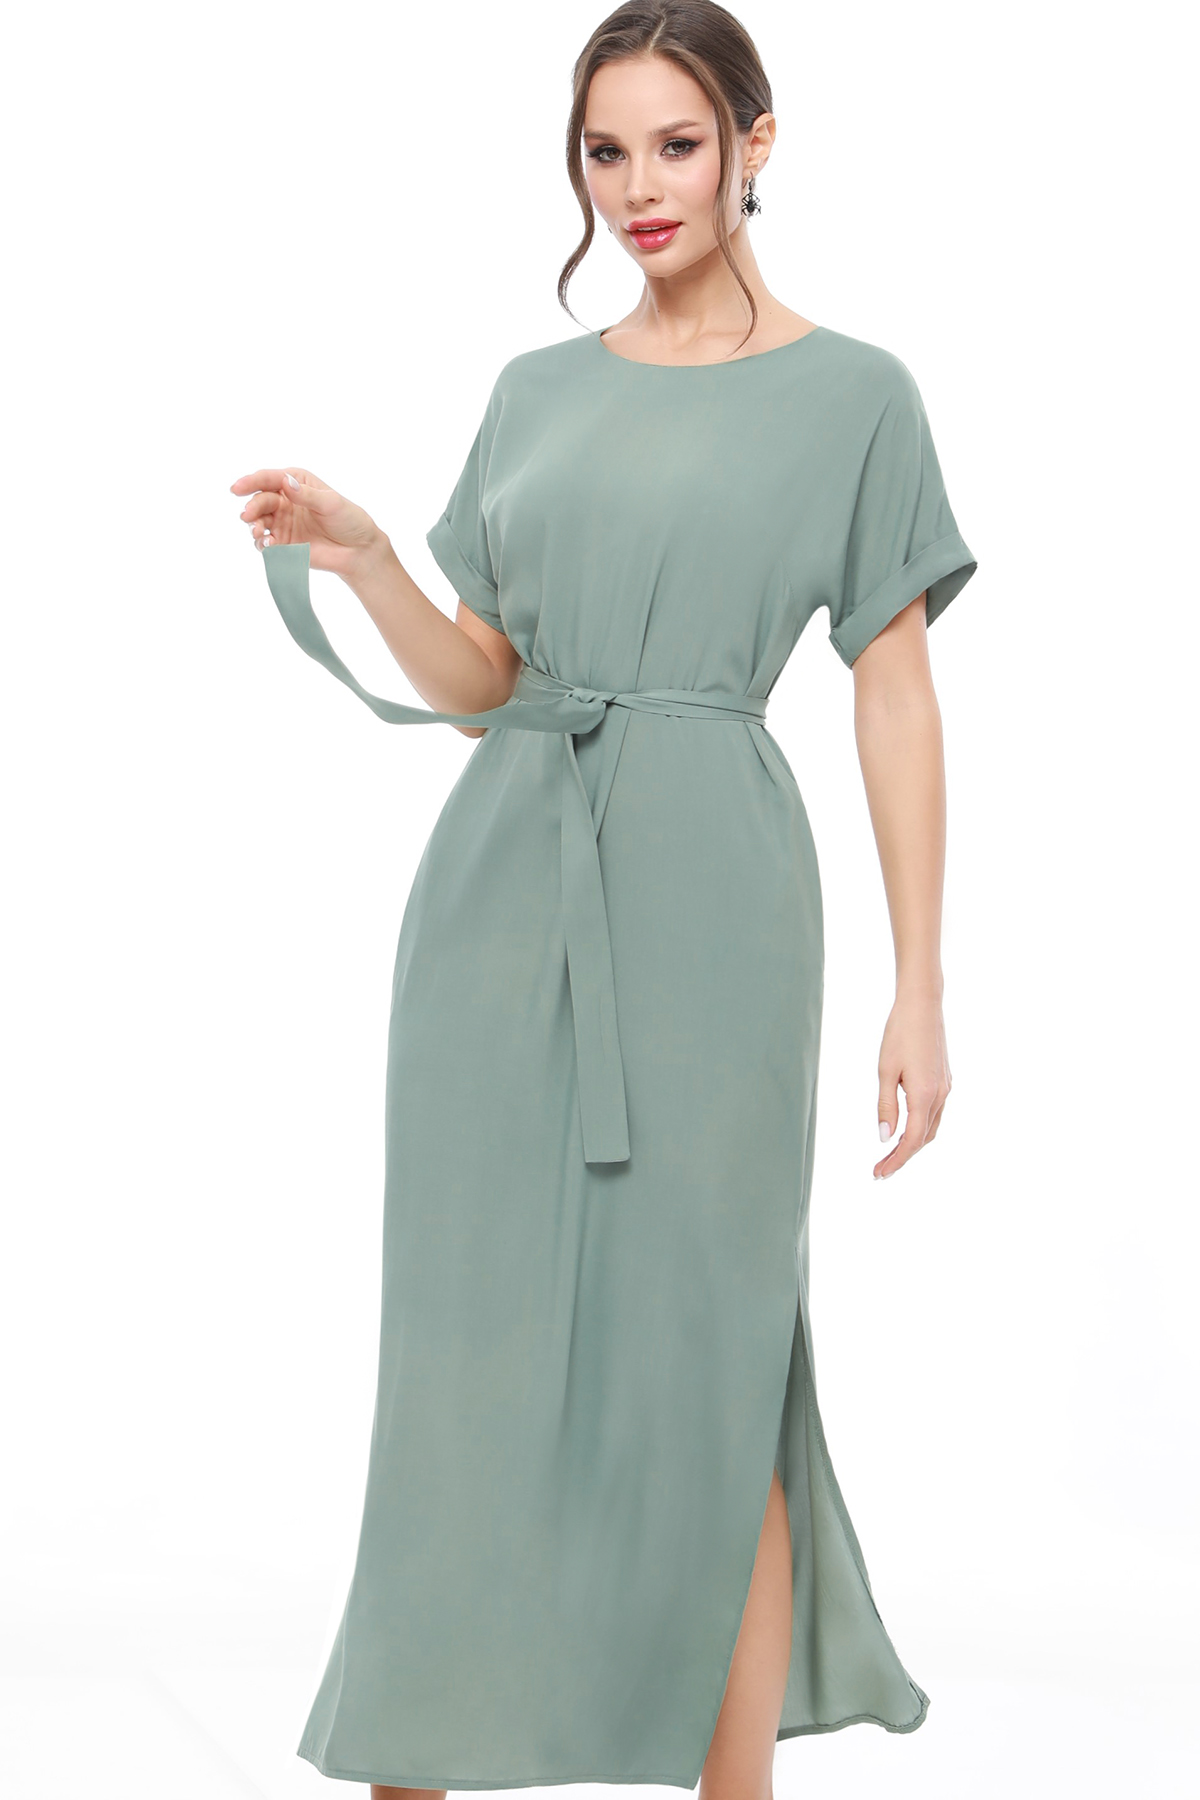 Платье женское DSTrend 0230 зеленое 50 RU